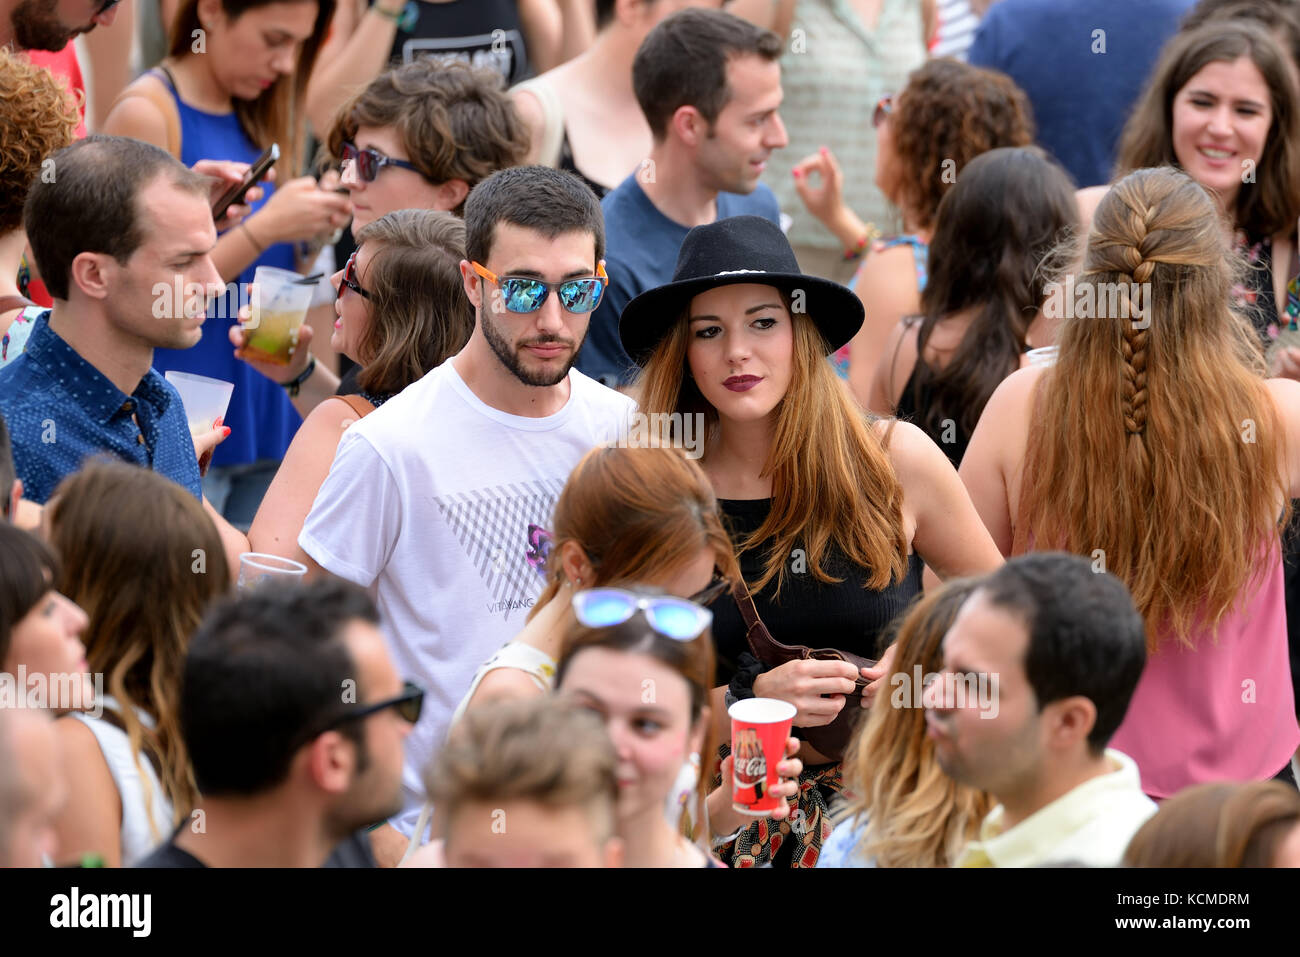 VALENCIA, SPAIN - JUN 11: The crowd at Festival de les Arts on June 11, 2016 in Valencia, Spain. Stock Photo